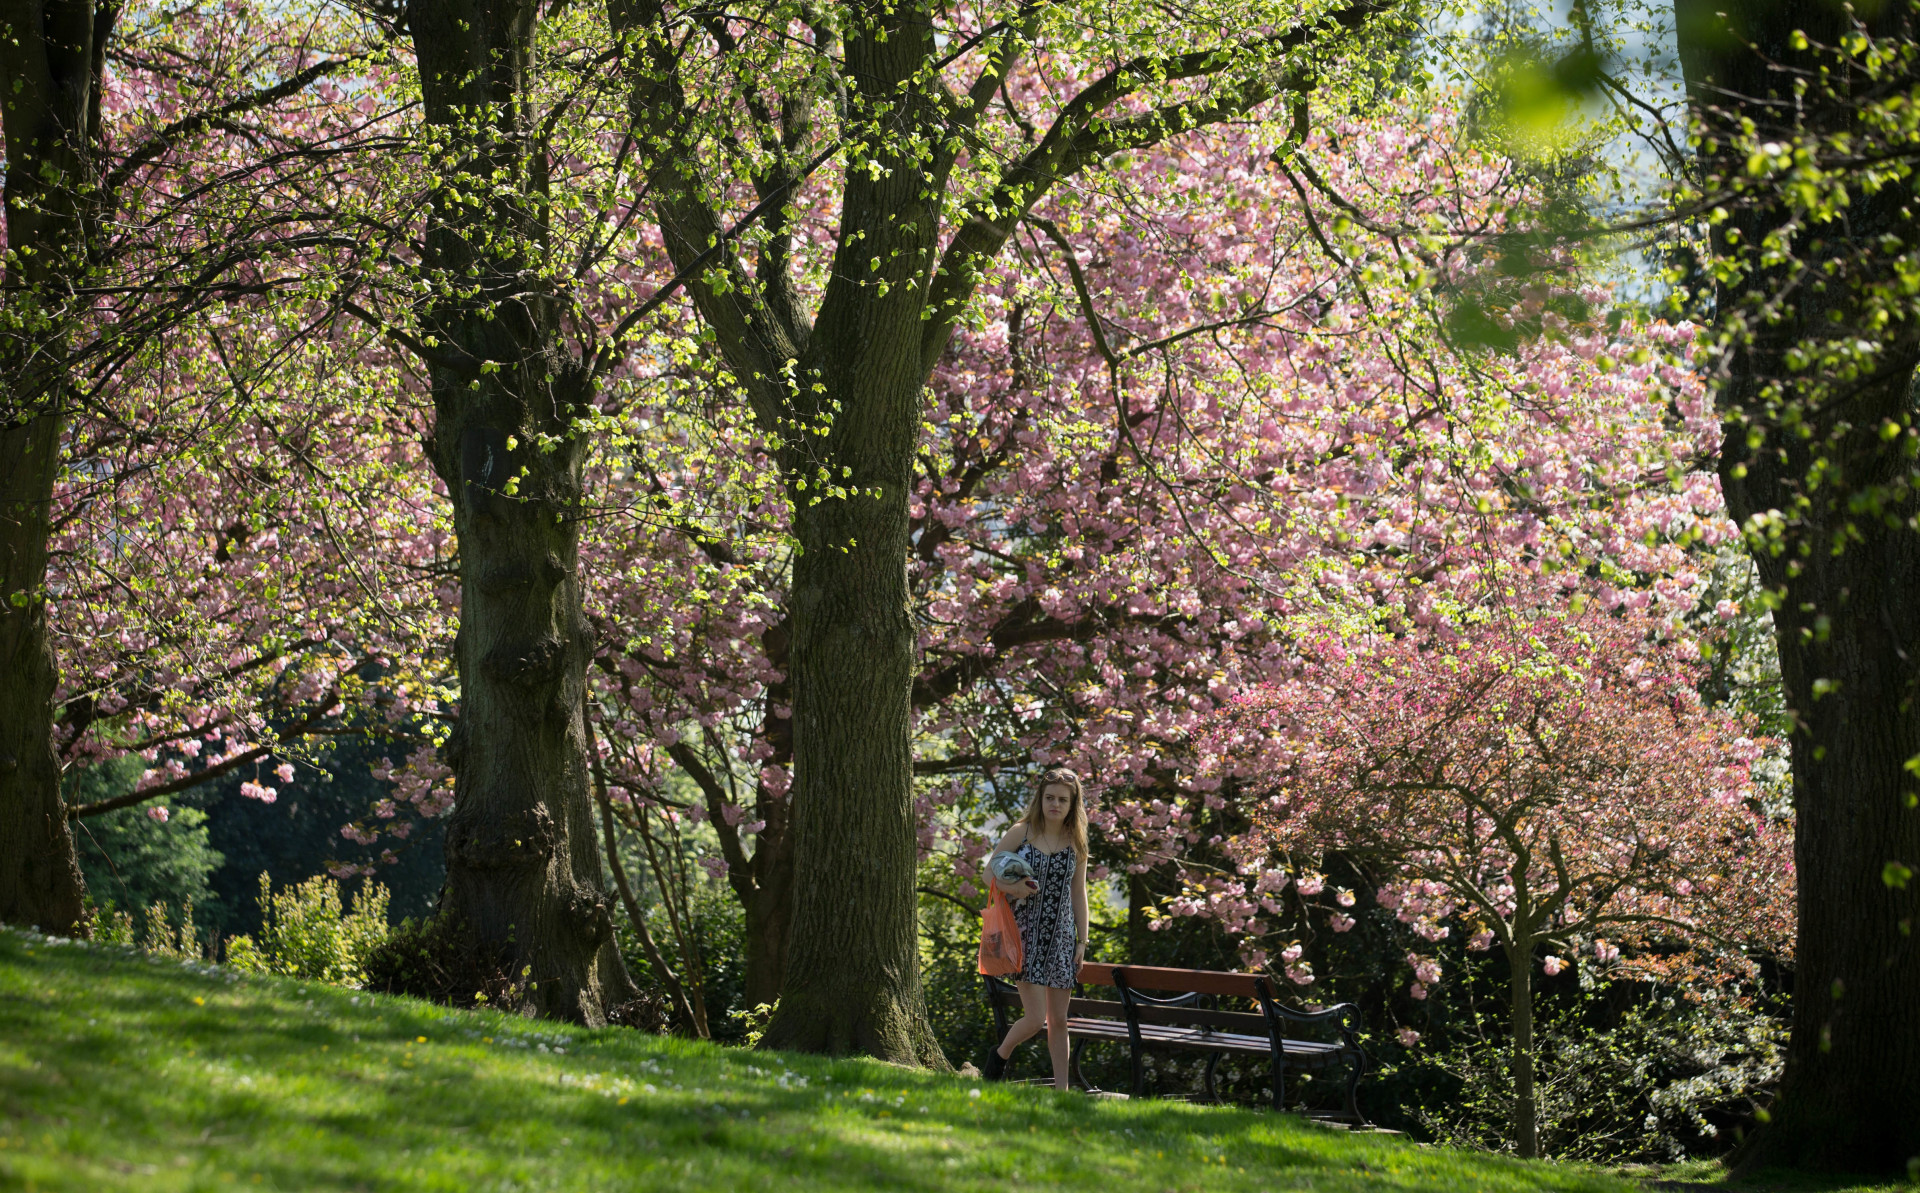 Trees in bloom in Brandon Park, Bristol.